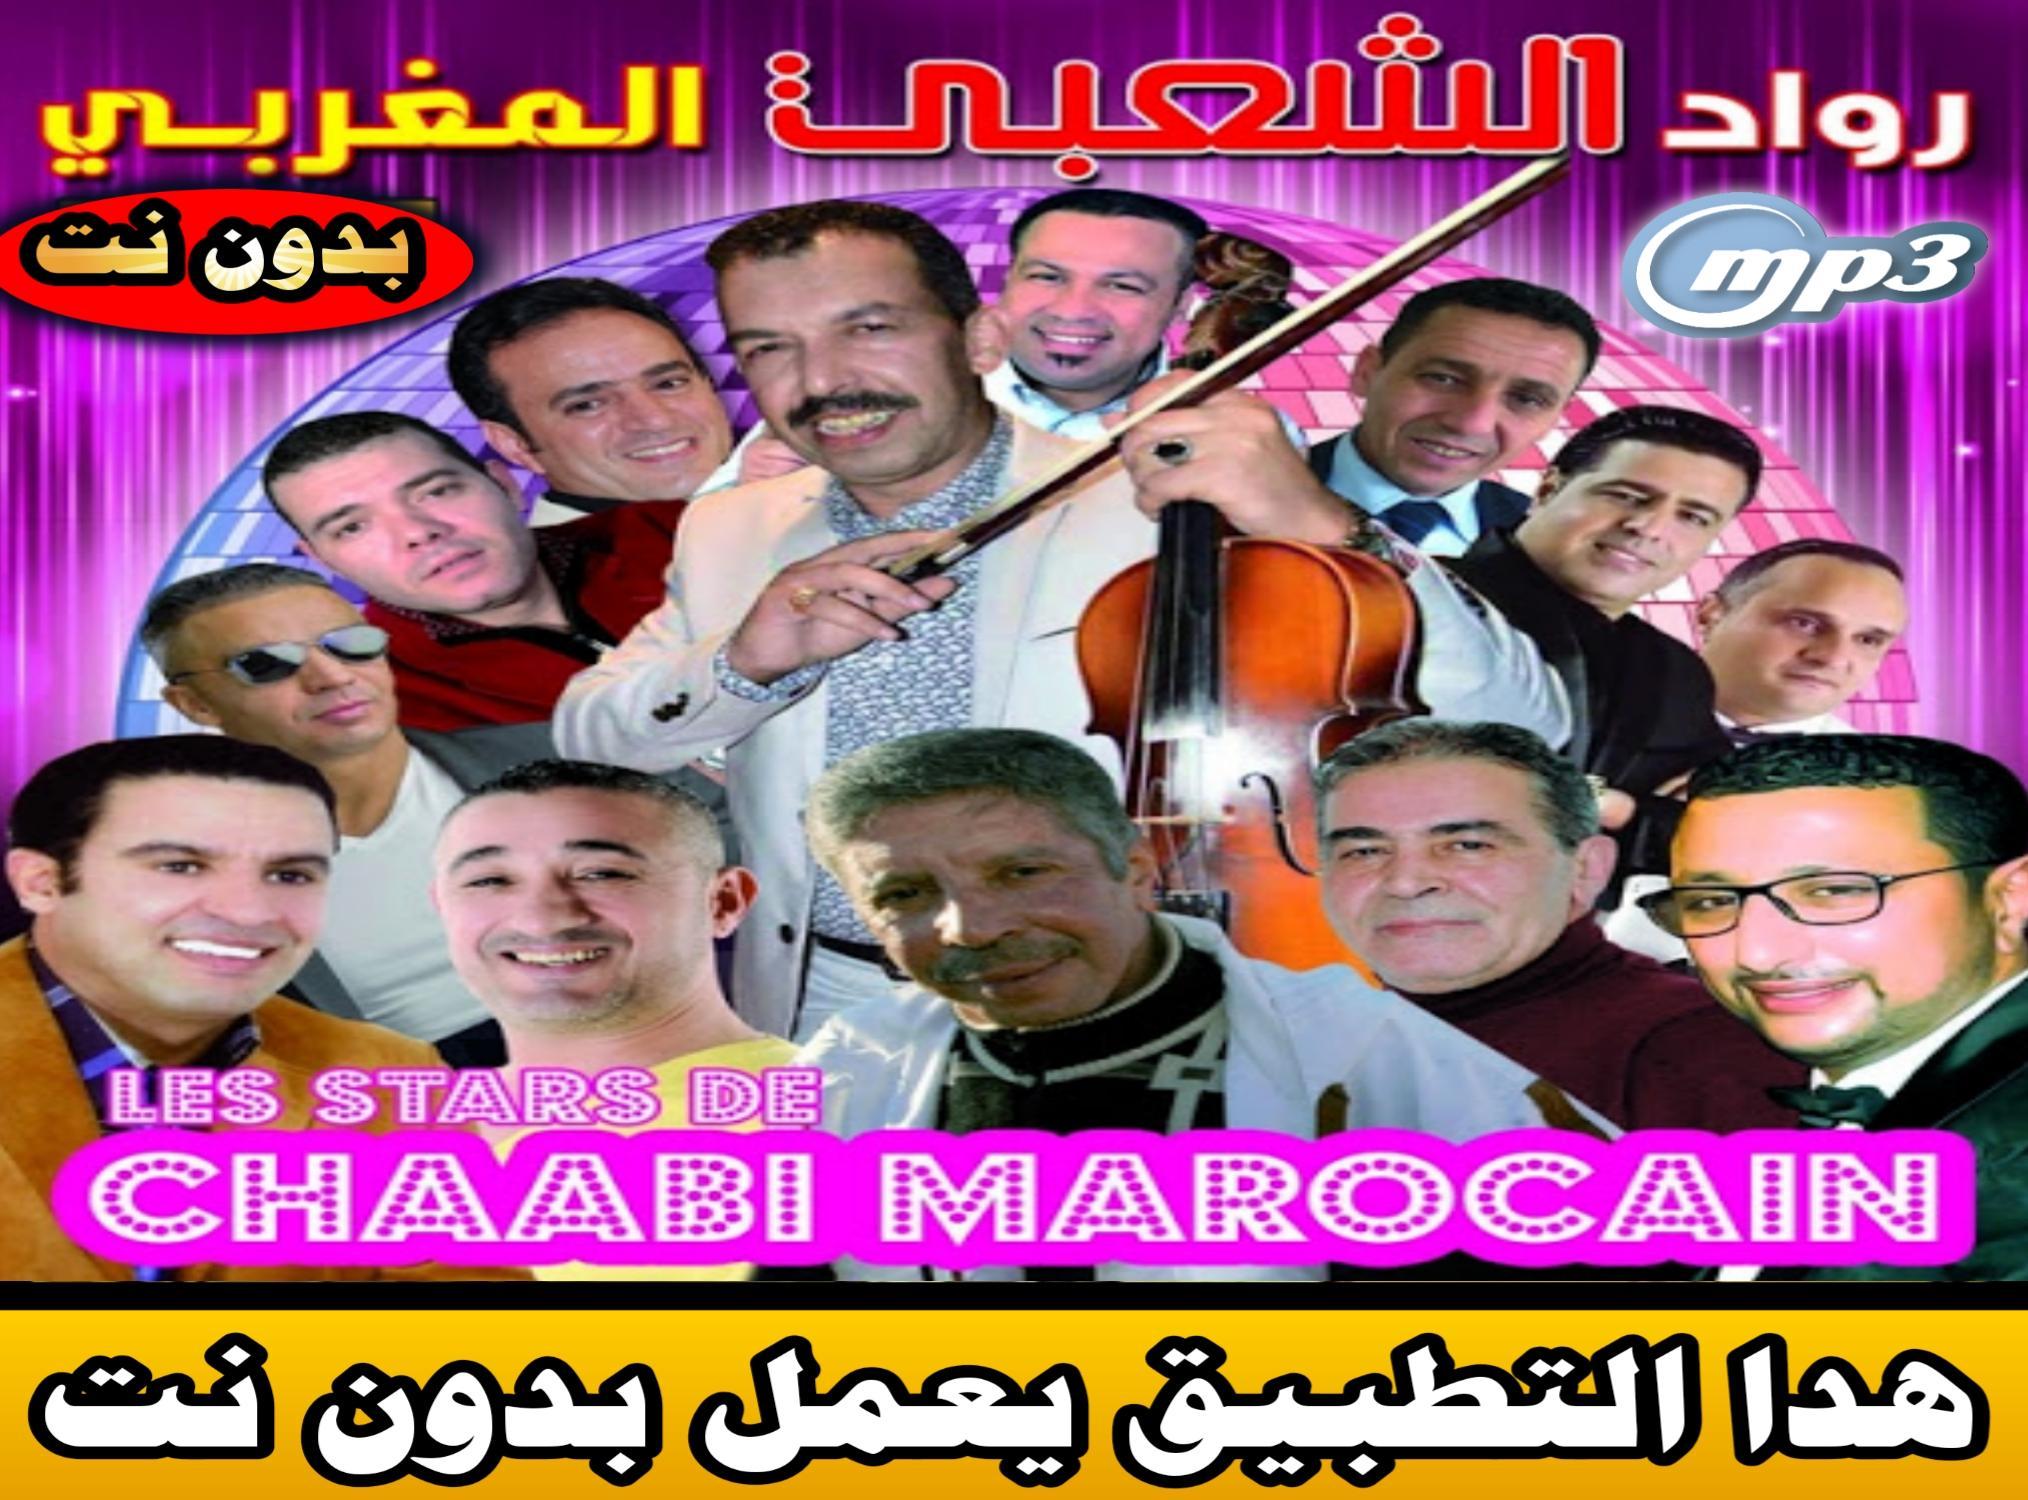 ممحاة جزء سباق تحميل اغاني راب مغربي mp3 - rezacrane.com